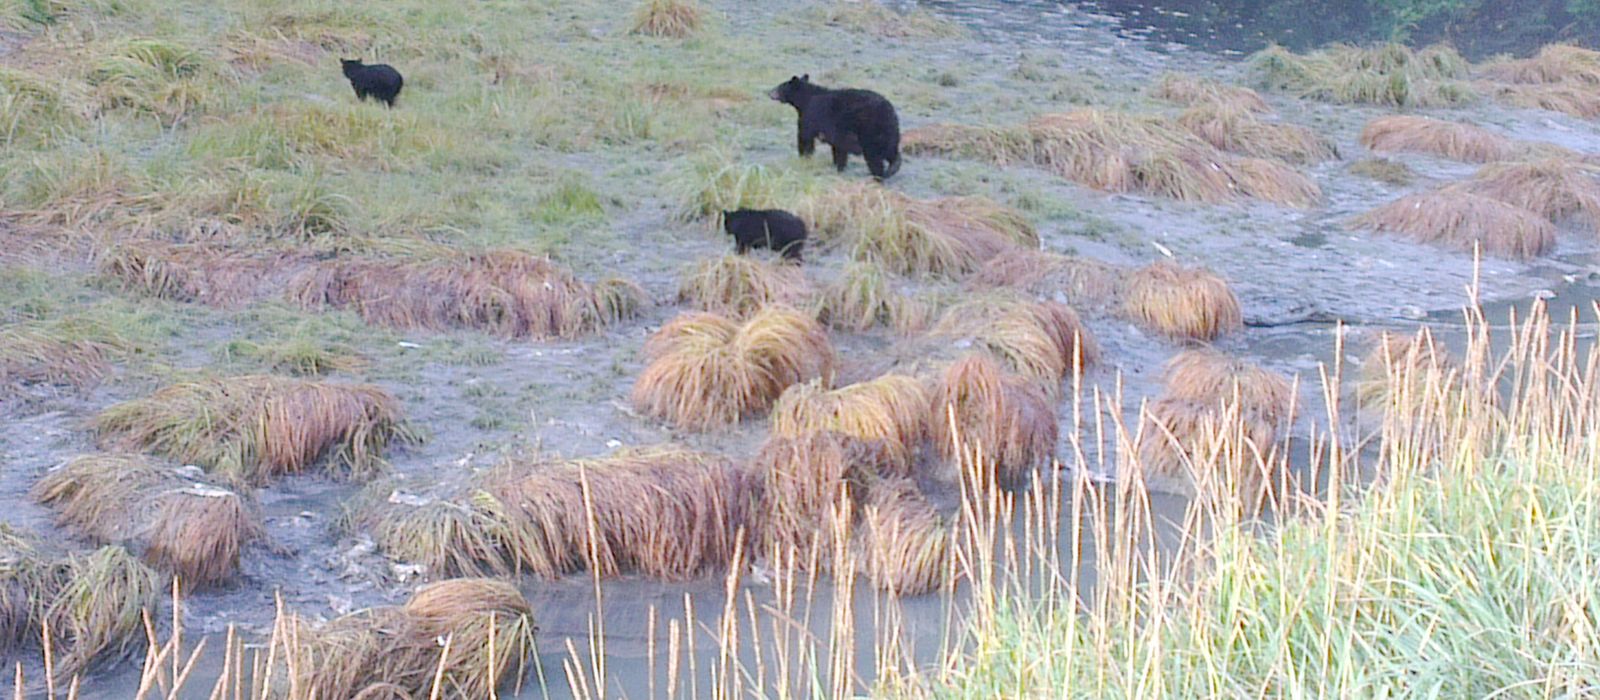 Schwarzbären am Wasserlauf